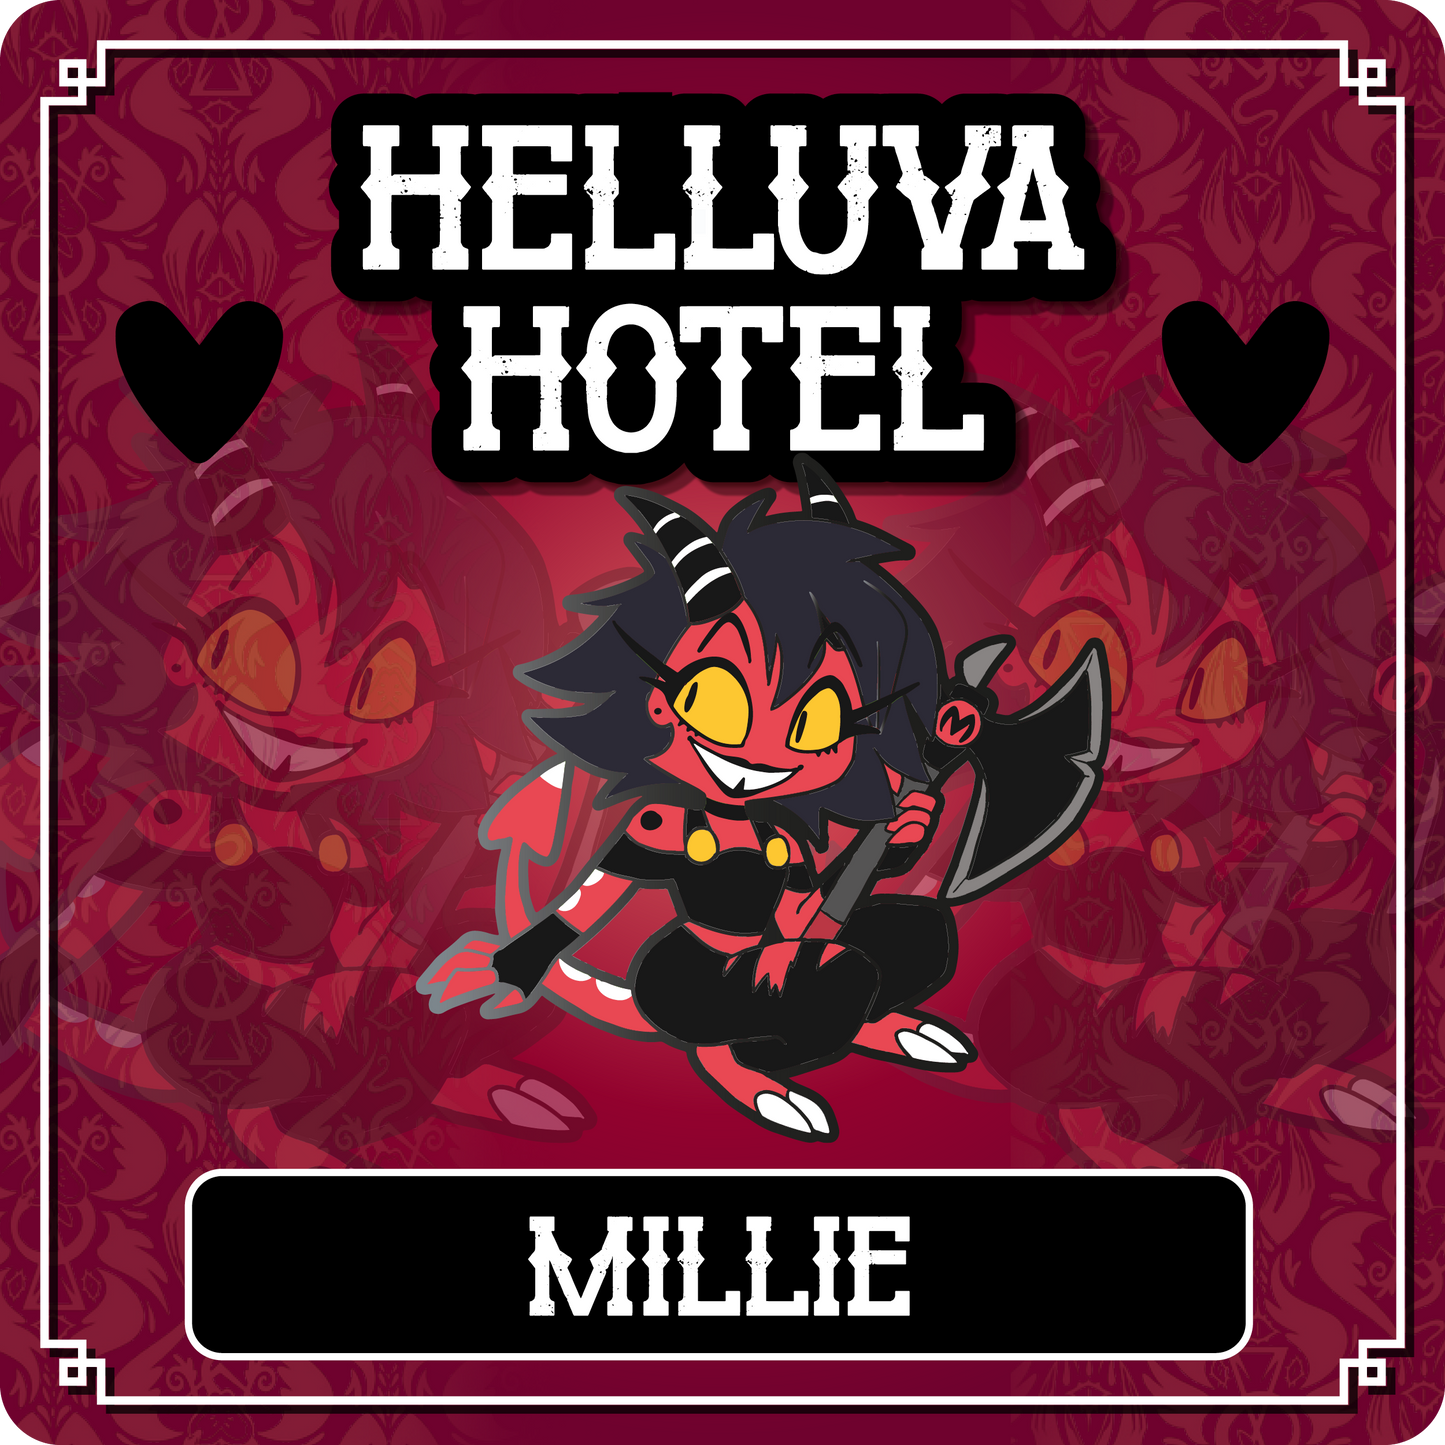 PREORDER Millie - Helluva Boss // Helluva Hotel Pin